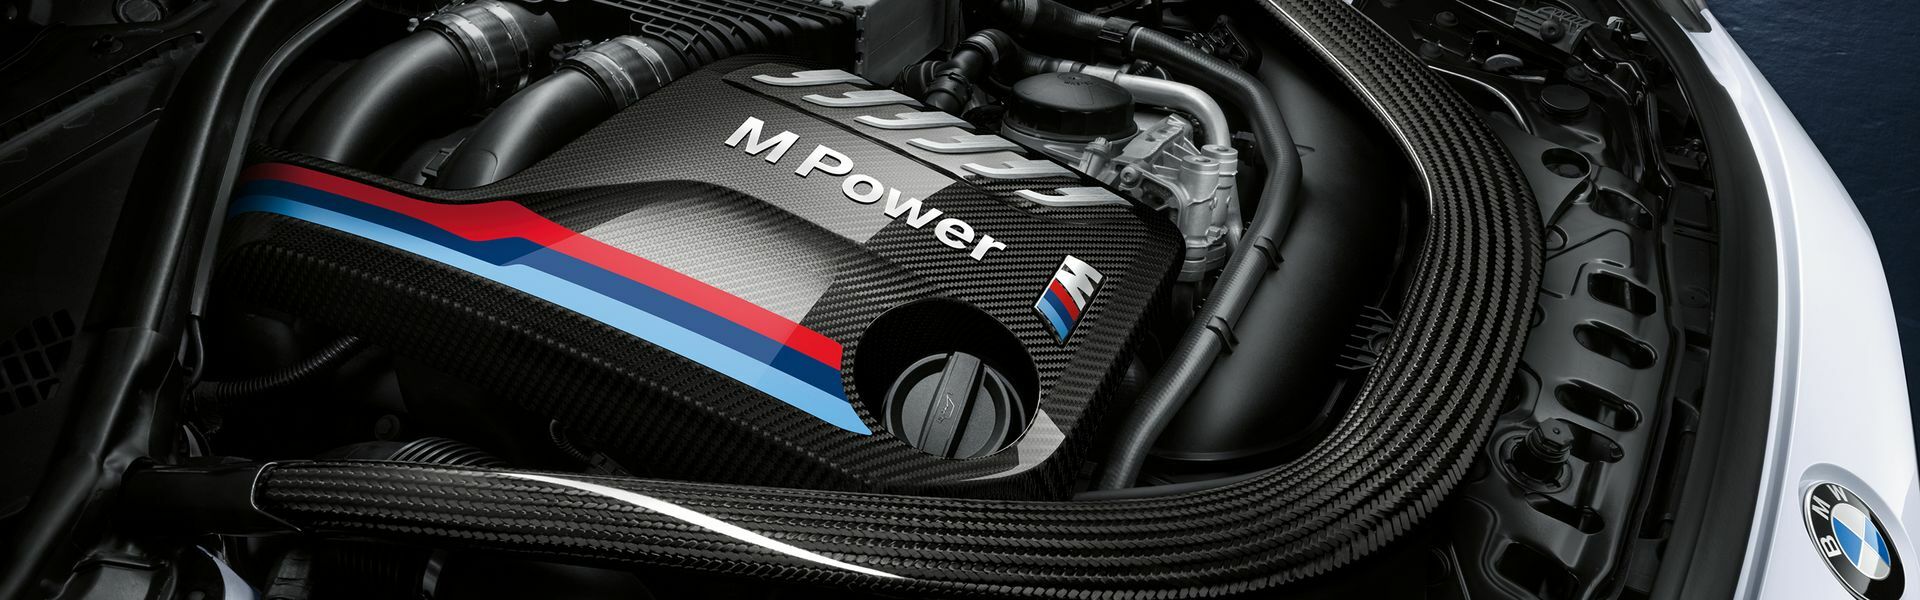 Zvýšení výkonu/ Softwarové úpravy/ Drobné performance díly pro automobil BMW 335i F30 F31